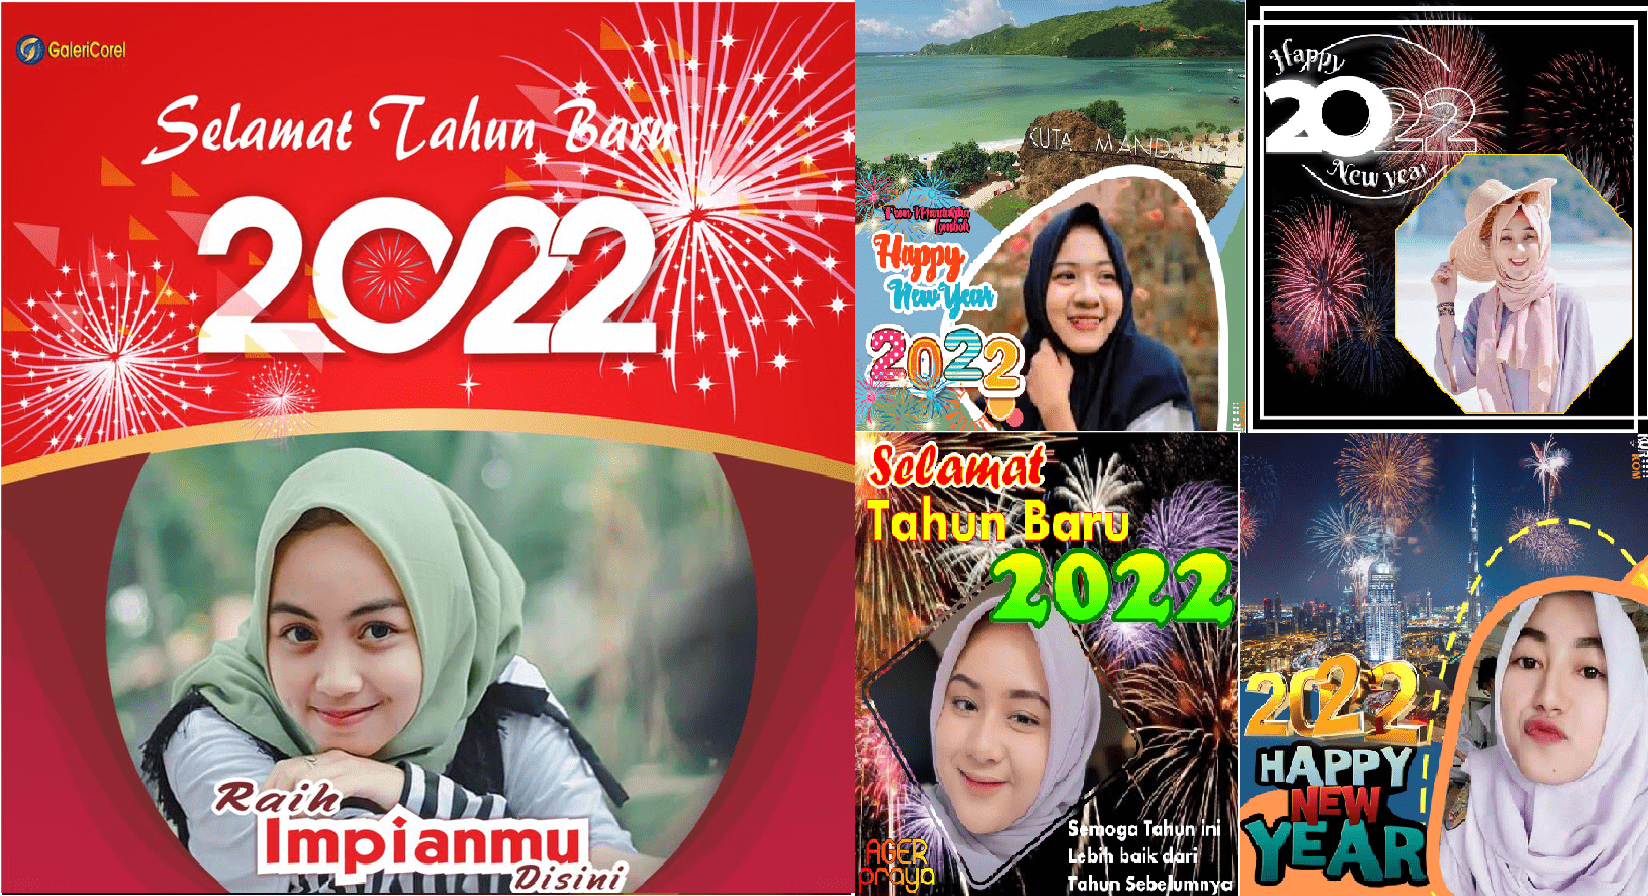 Liputan Jawa | Cara Pasang Foto Twibbon Ucapan Selamat Tahun Baru 2022